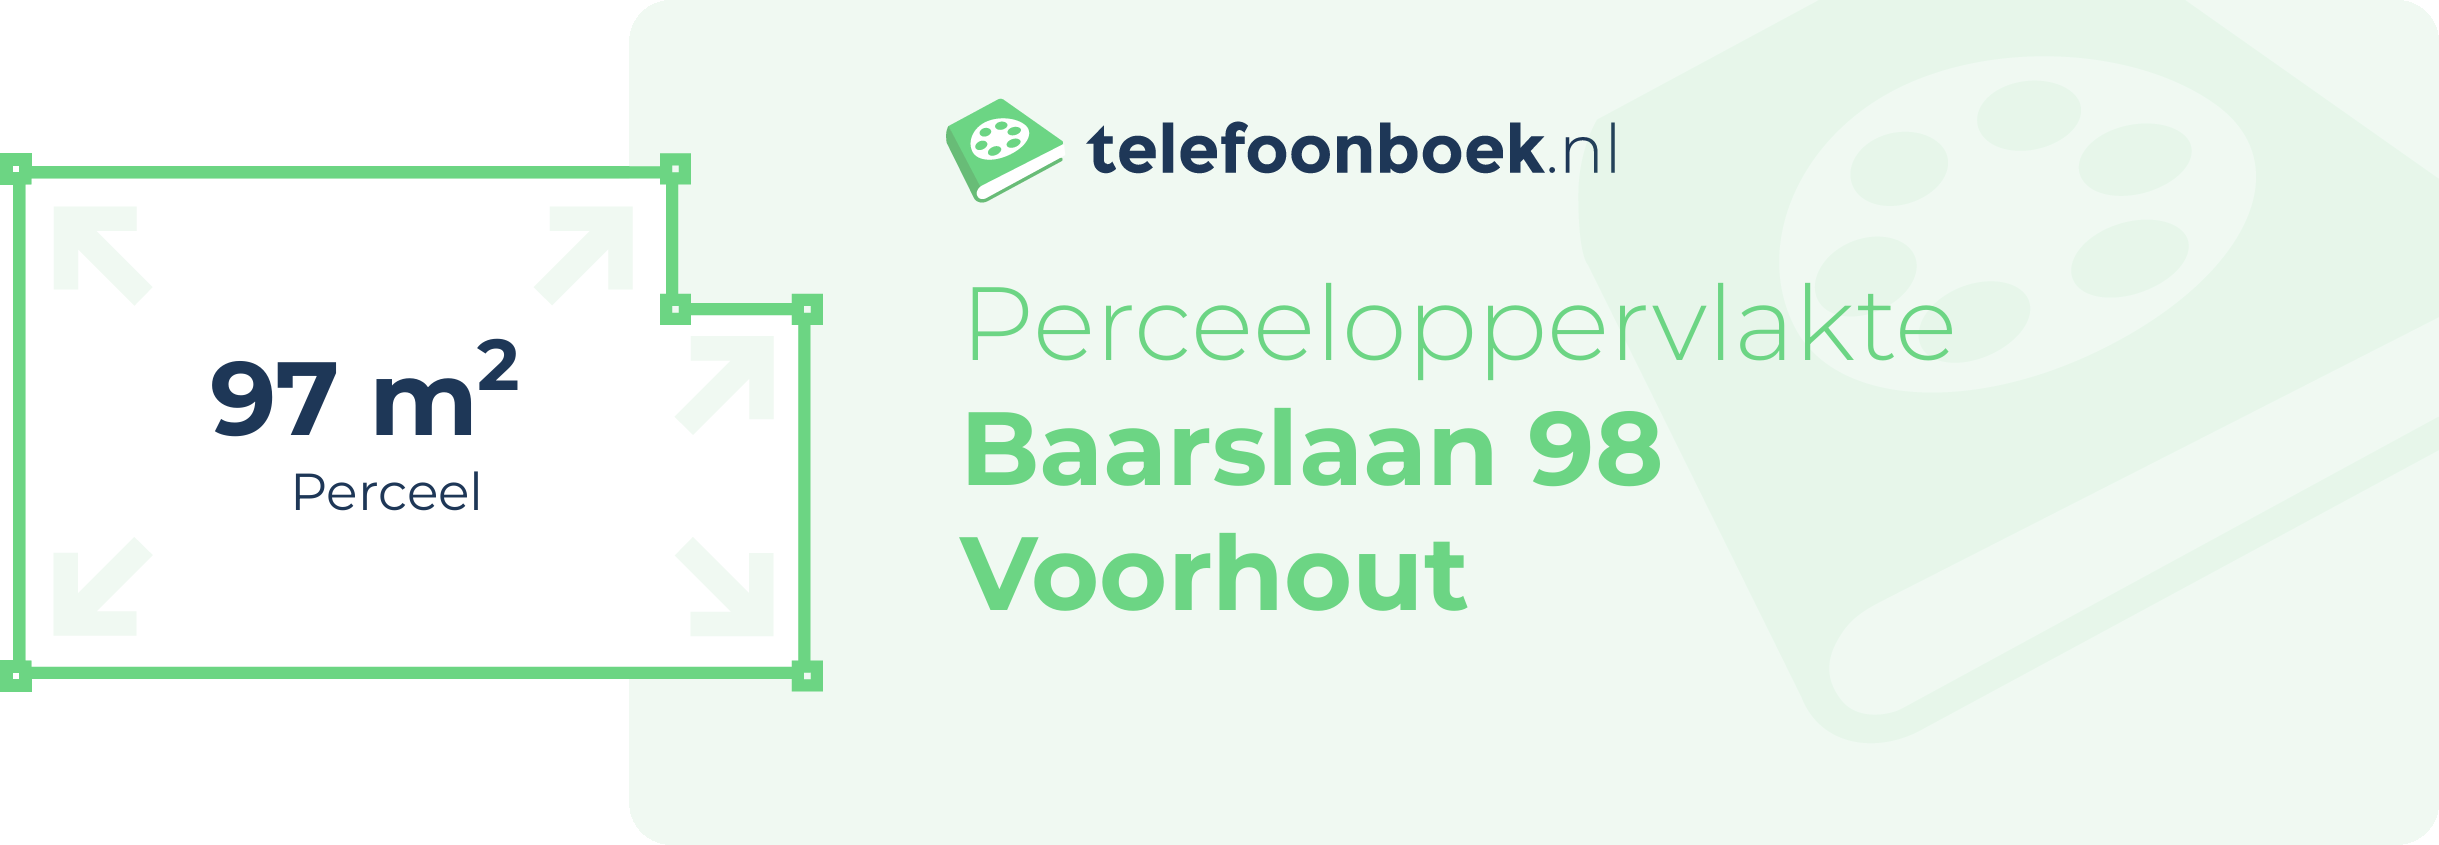 Perceeloppervlakte Baarslaan 98 Voorhout